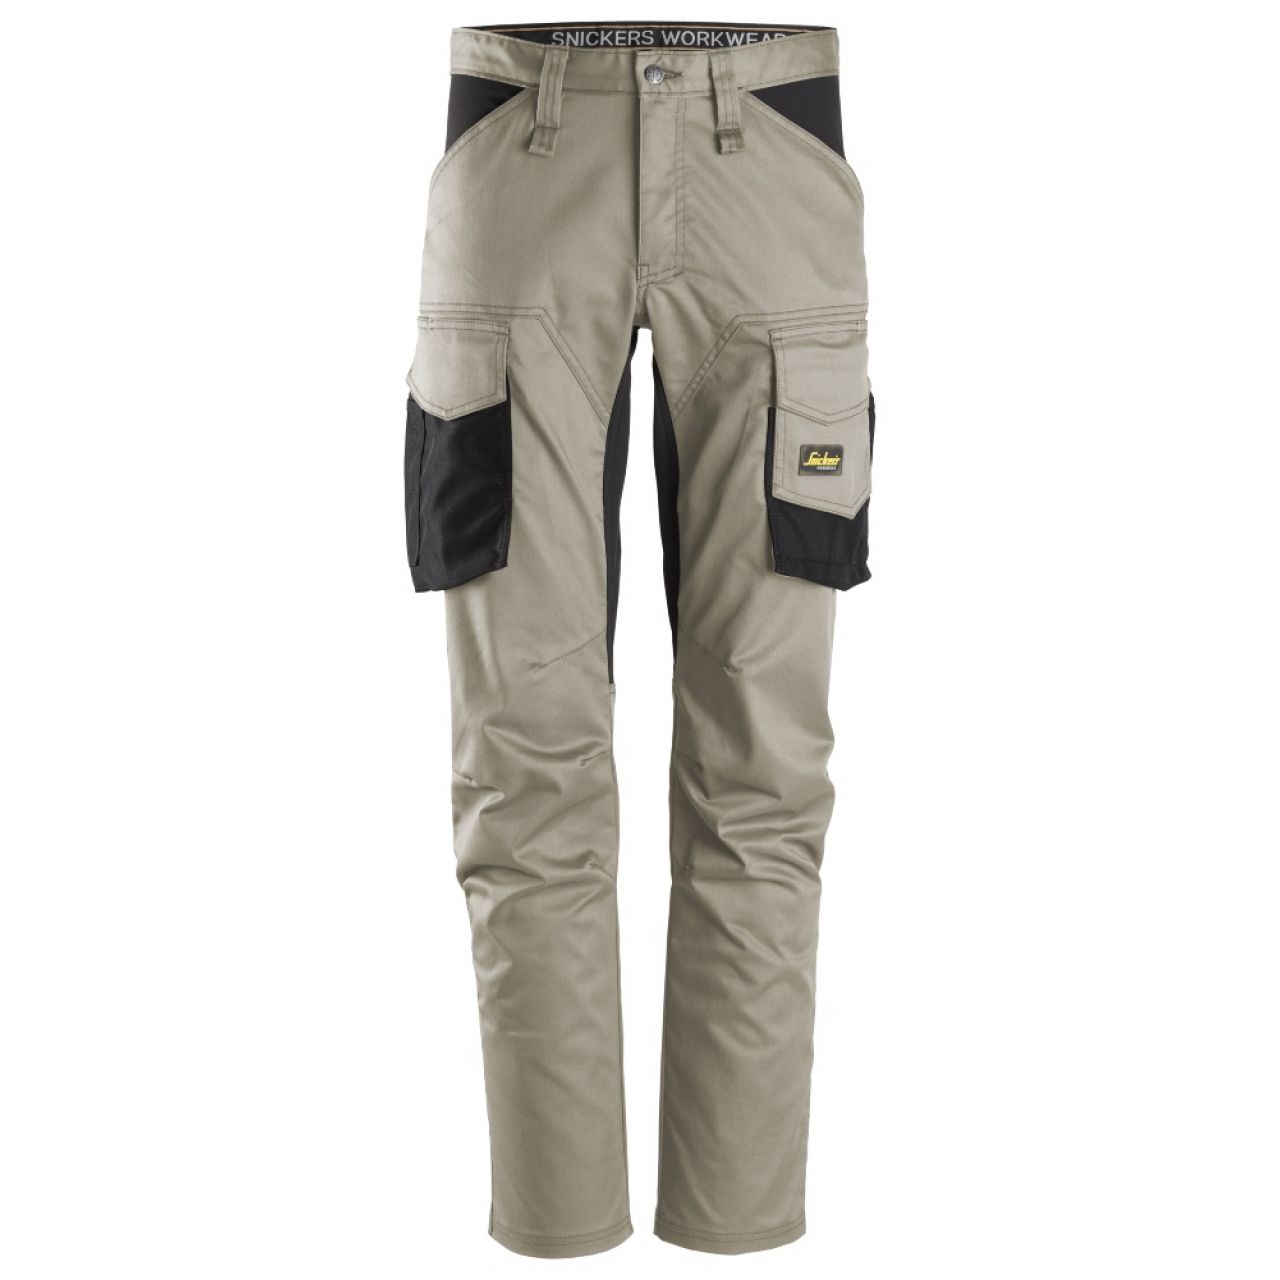 6803 Pantalones largos de trabajo elásticos sin bolsillos para las rodilleras AllroundWork beige-negro talla 254